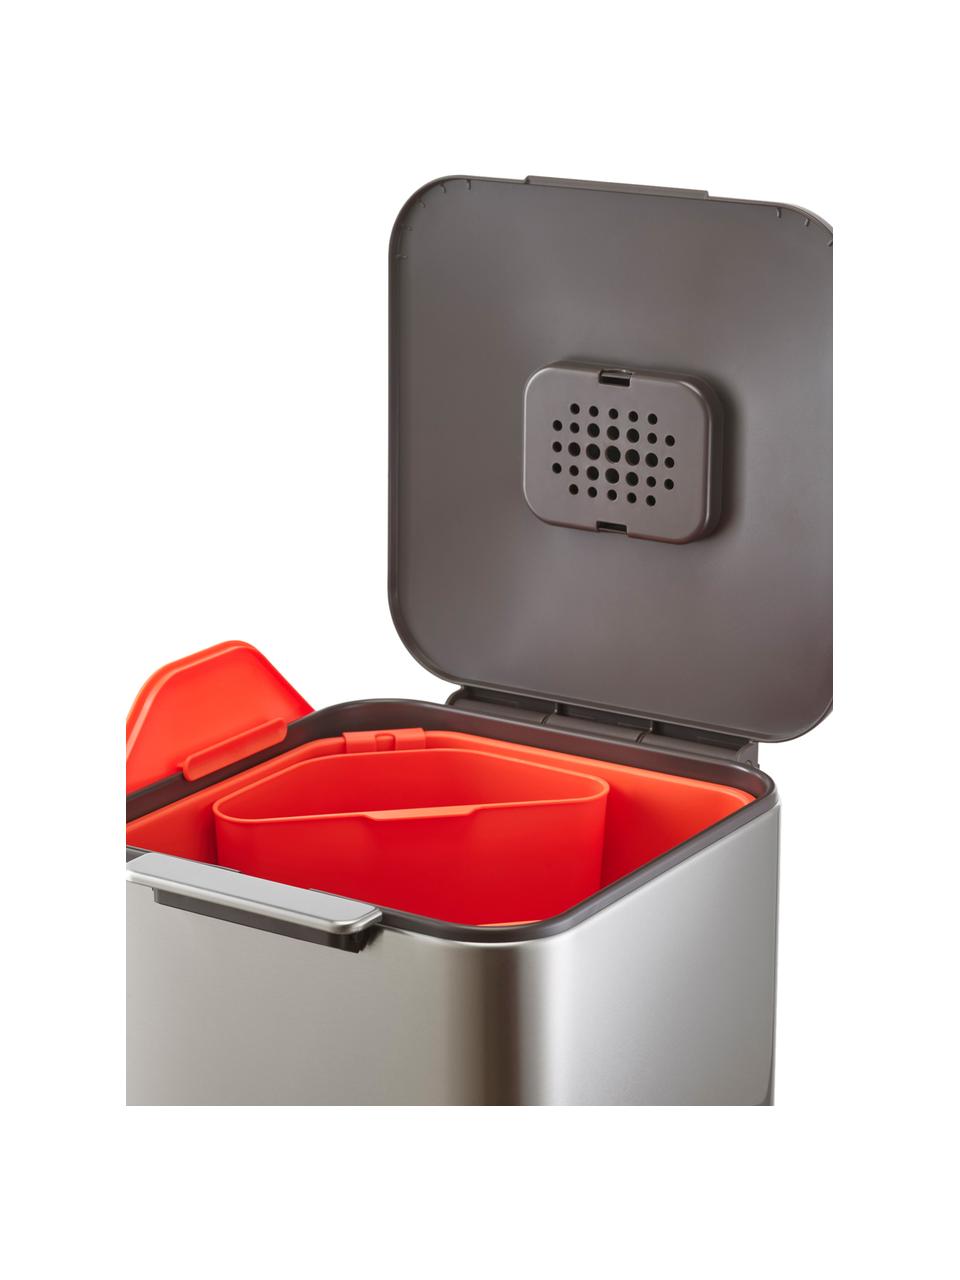 Odpadkový koš s oddělenou recyklační jednotkou Totem, 2x20 l, Stříbrná, Š 30 cm, H 37 cm, 40 l